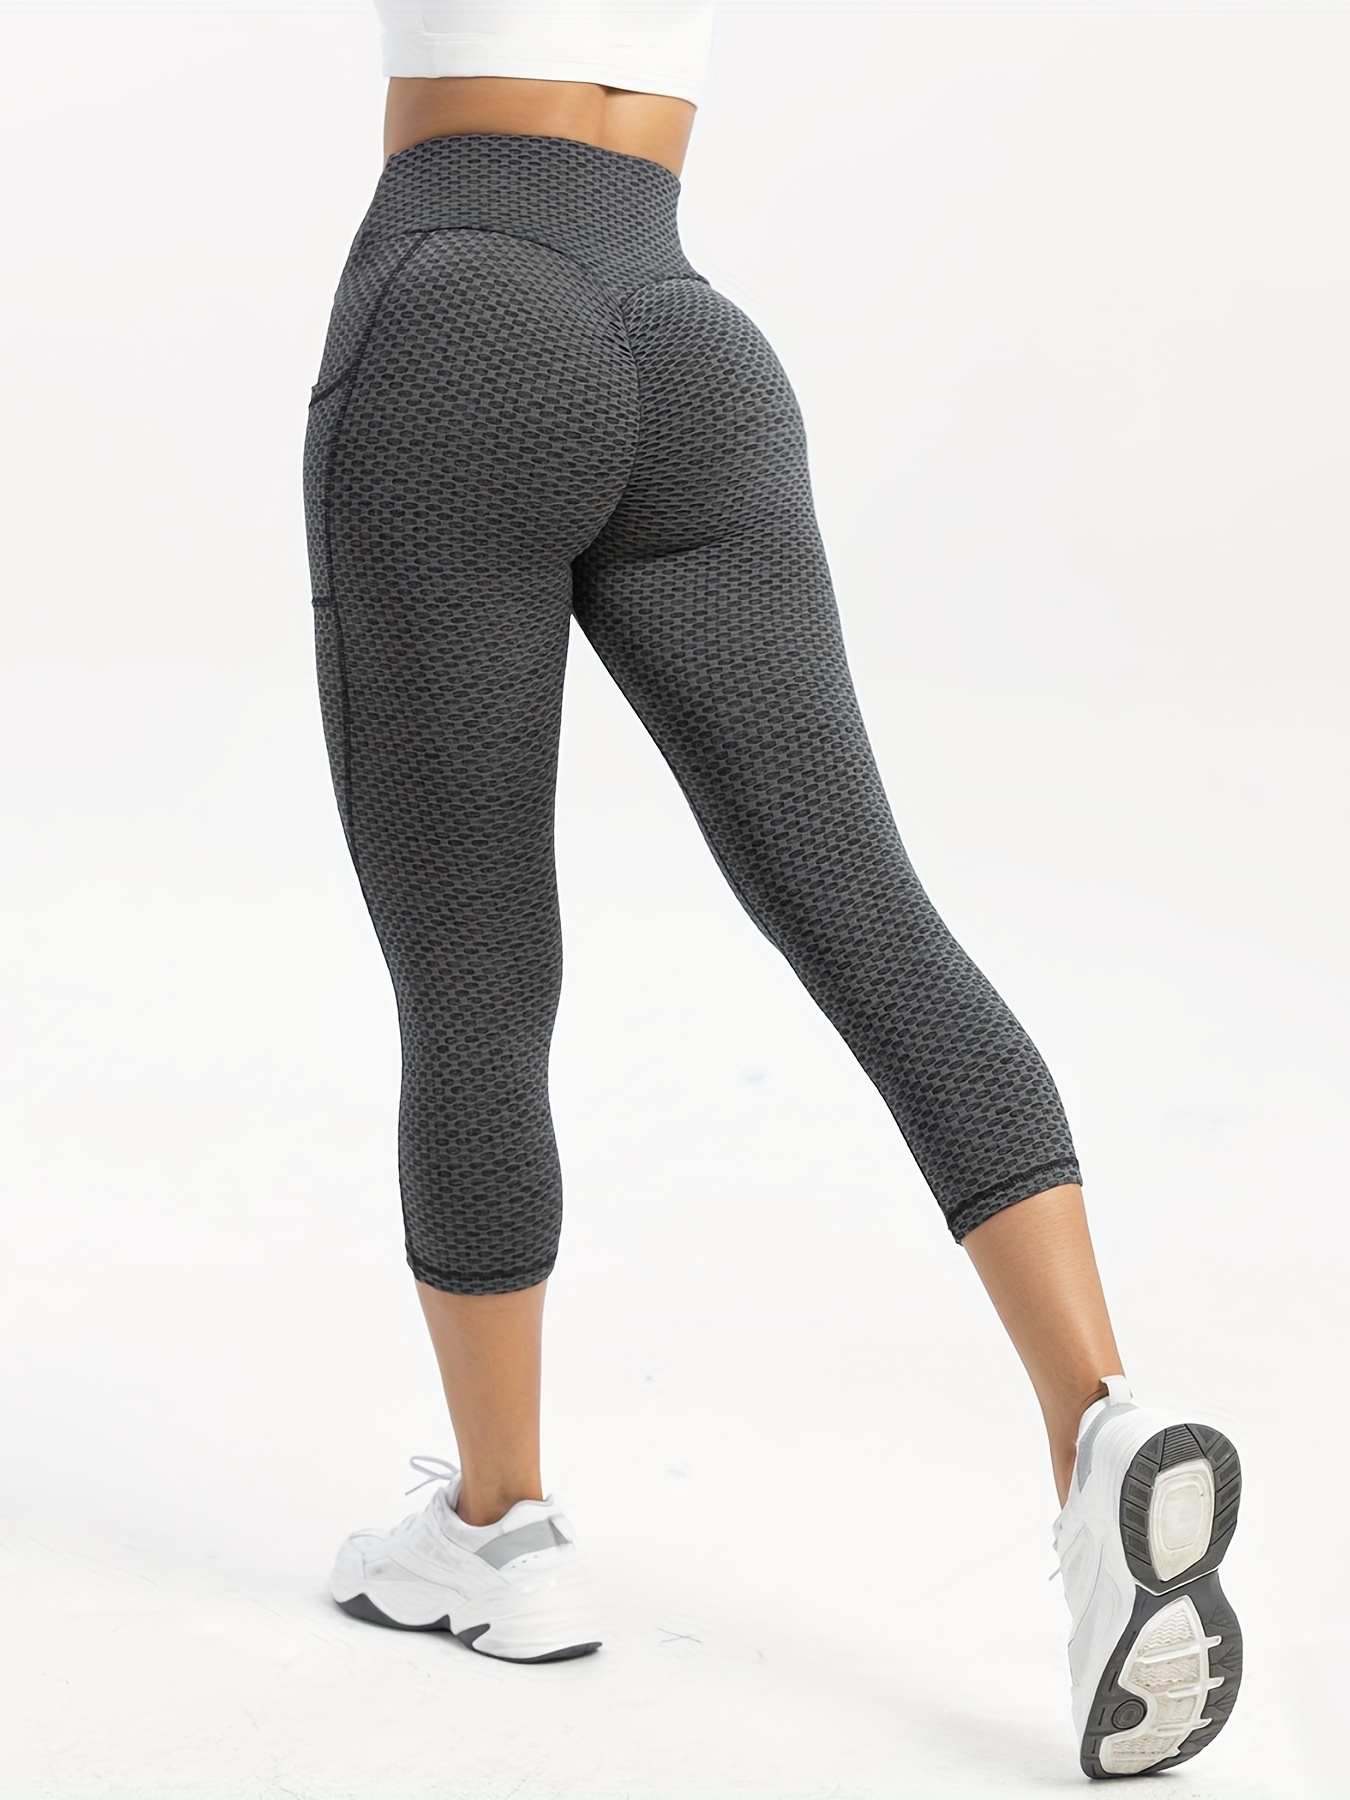 High Waist Leggings Pocket Womens Butt' Lift Curves Workout Tights